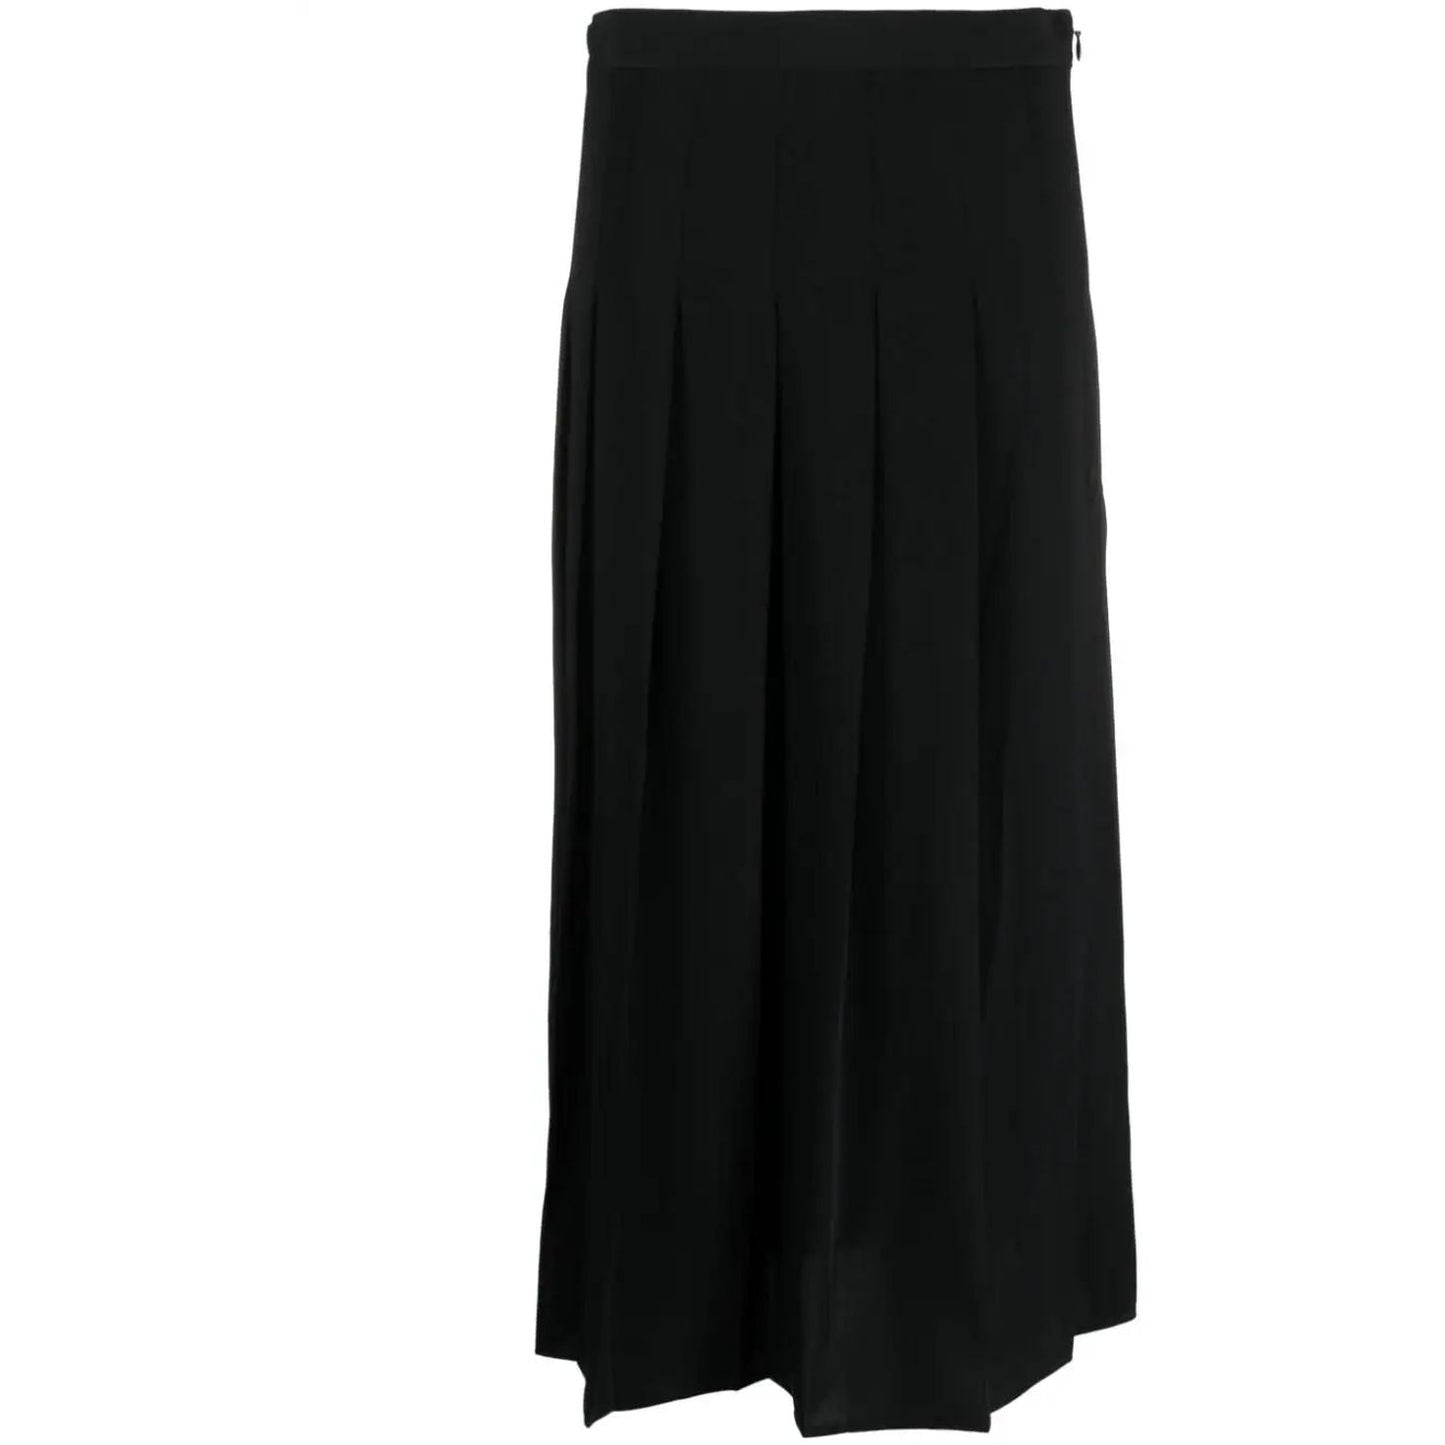 POLO RALPH LAUREN moteriškas juodas sijonas Plate midi skirt